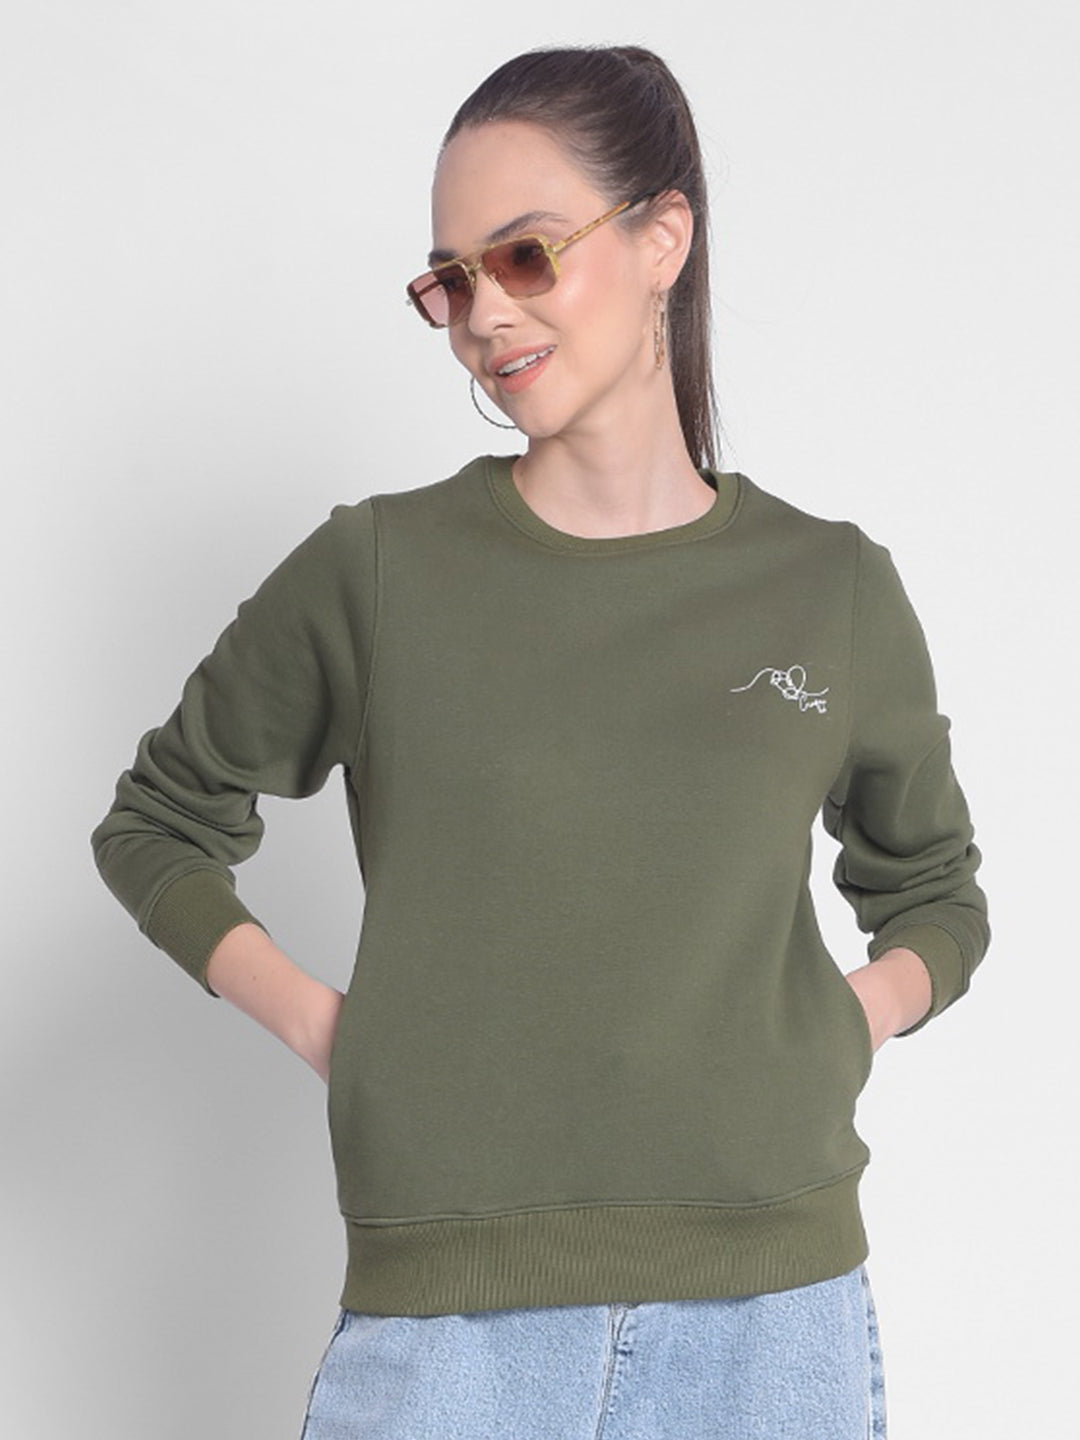 Olive Sweatshirt-Women Sweatshirts-Crimsoune Club